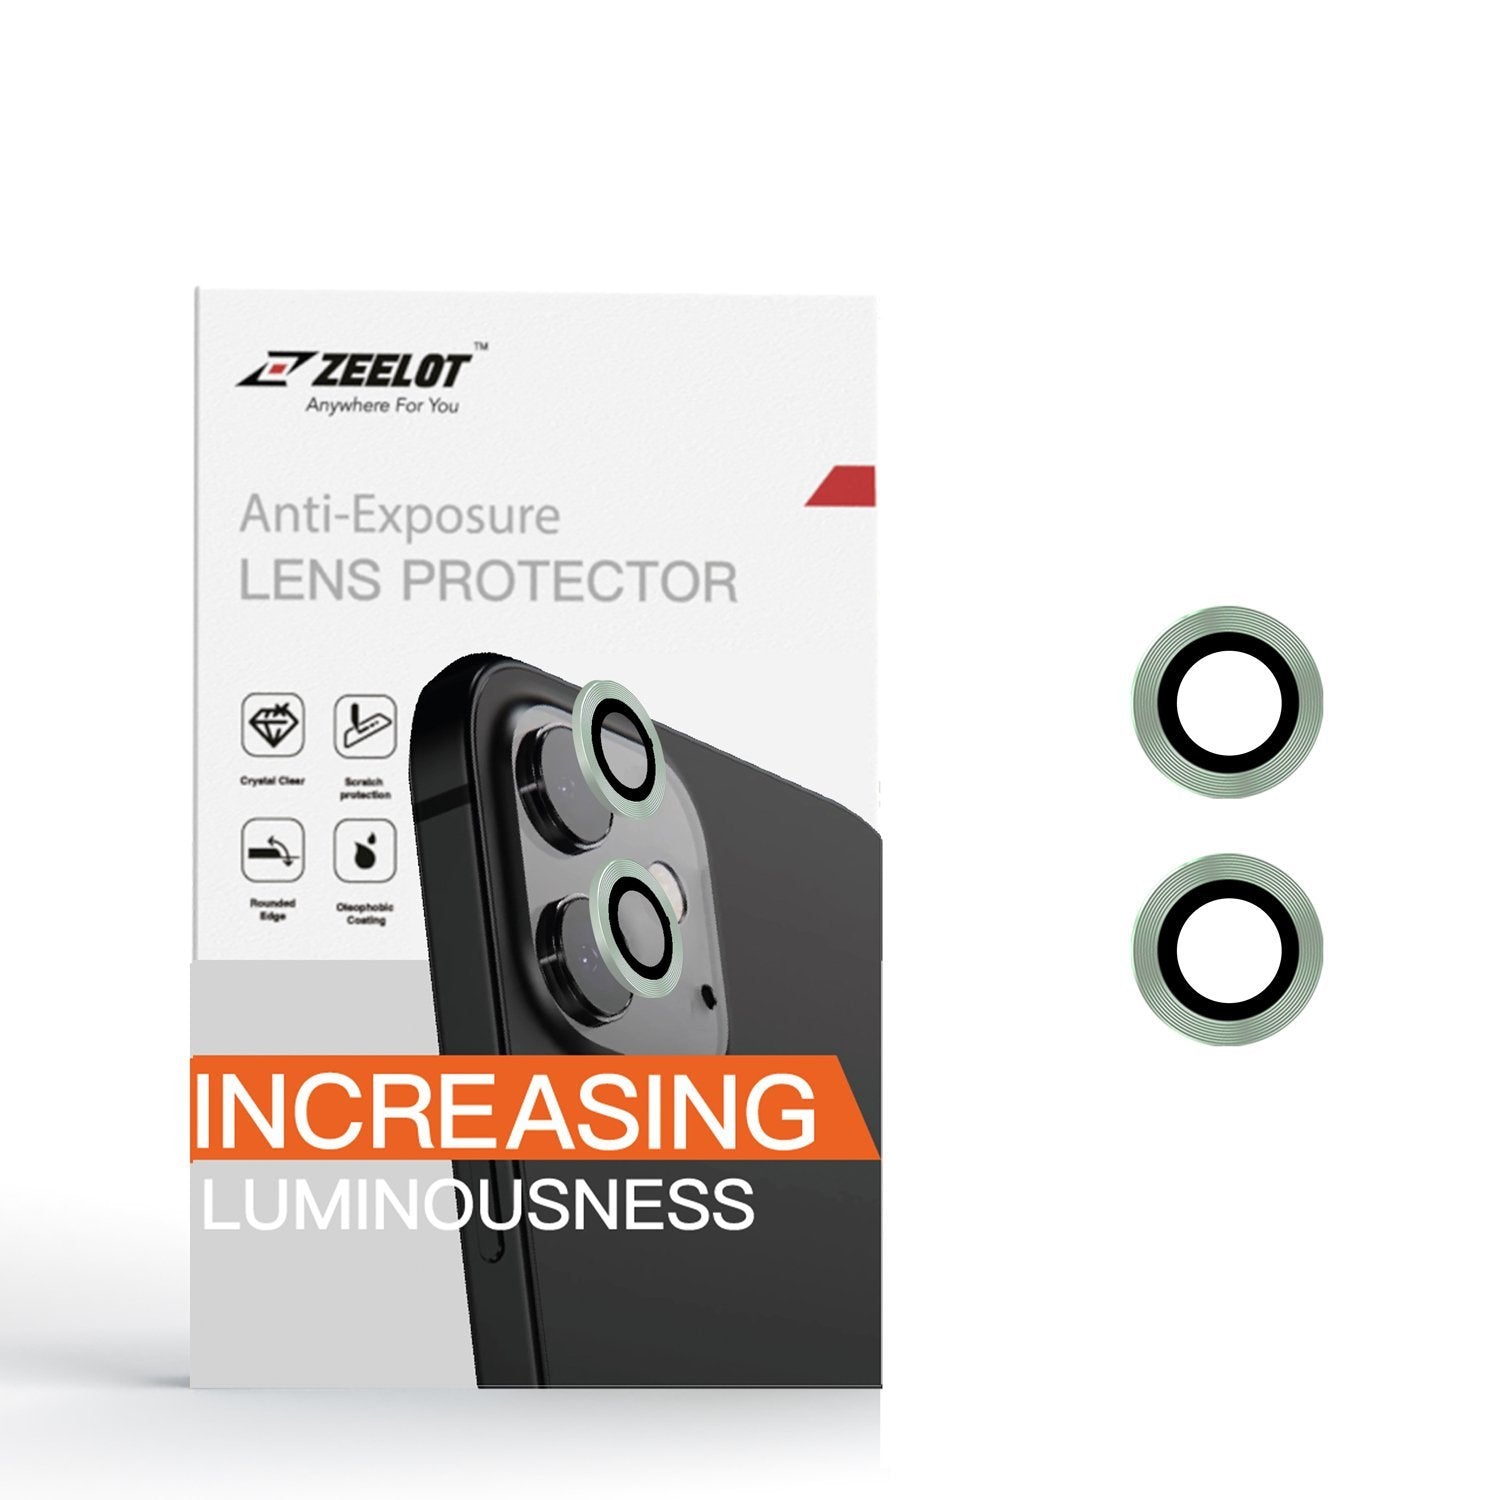 ZEELOT Titanium Steel with Lens Protector for iPhone 12 6.1"/12 Mini 5.4"/iPhone 11 6.1" (Two Cameras), Green Default ZEELOT 